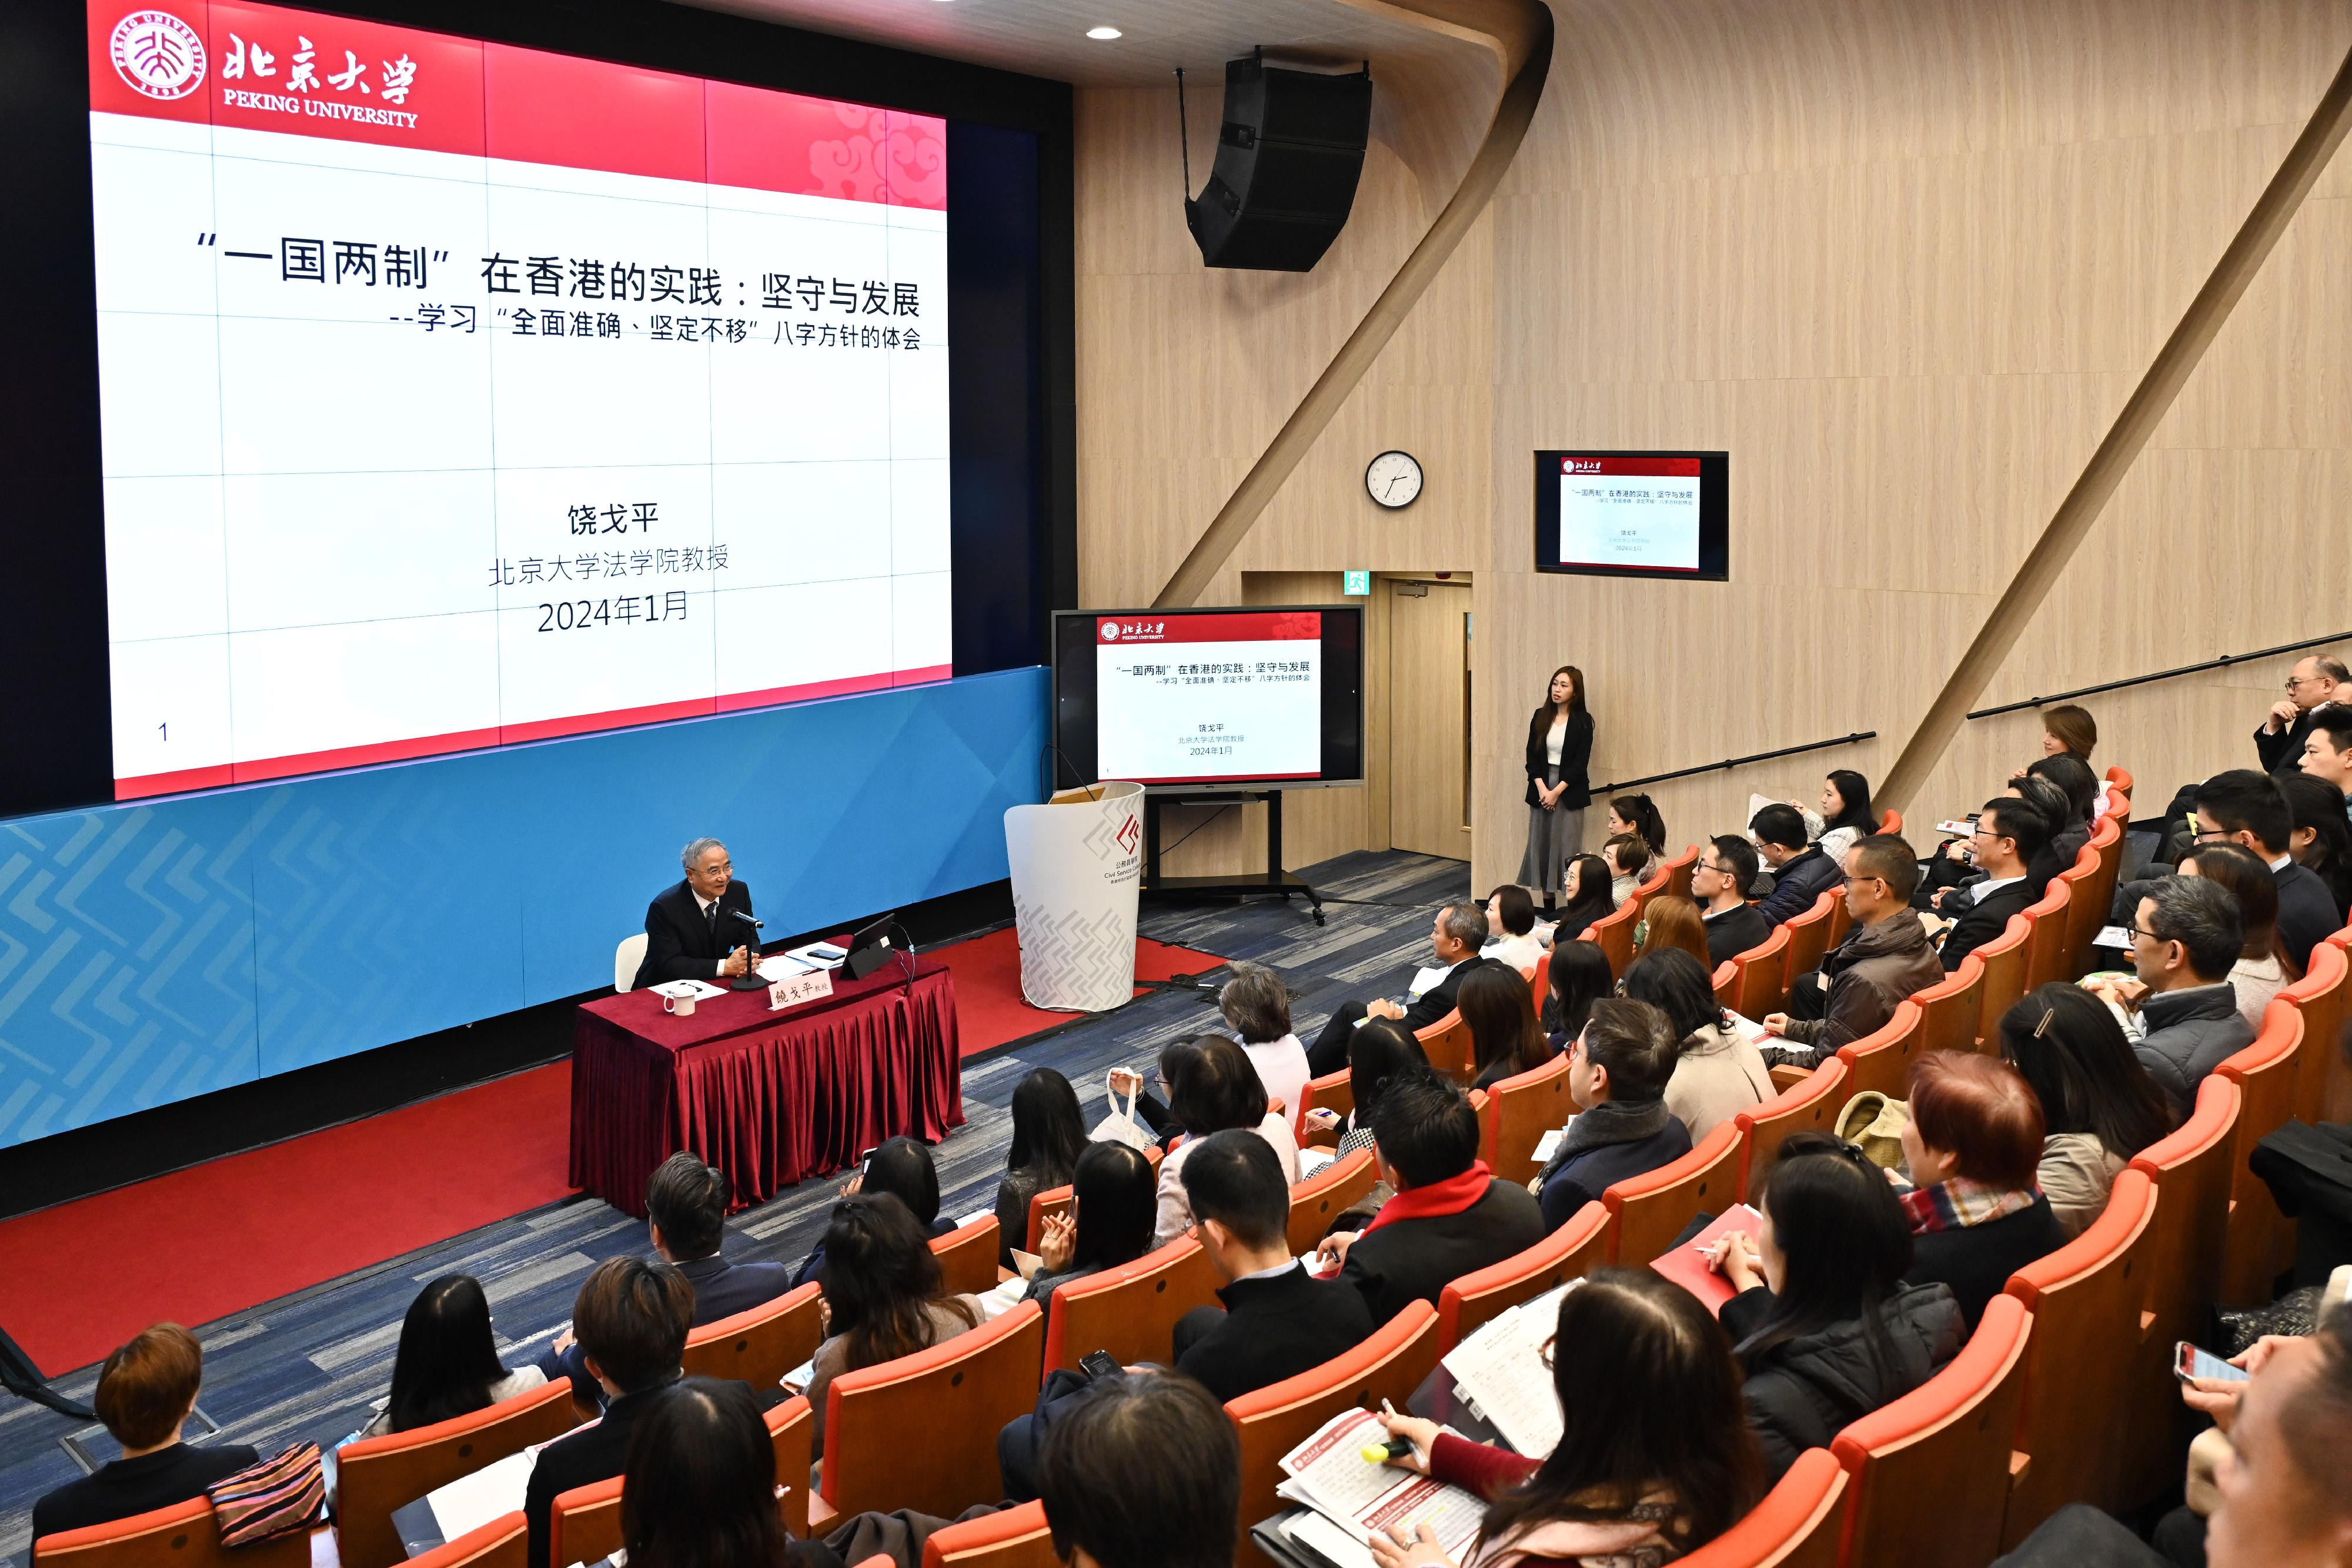 公務員學院與北京大學港澳研究院合辦的「一國兩制」及當代中國深入研習課程今日（一月二十三日）在公務員學院舉行以「『一國兩制』的堅守與發展」為題的講座。約70名首長級薪級表第一及第二點的公務員參與研習課程，另有約110名政治委任官員和首長級人員報讀旁聽，透過網上上課。


